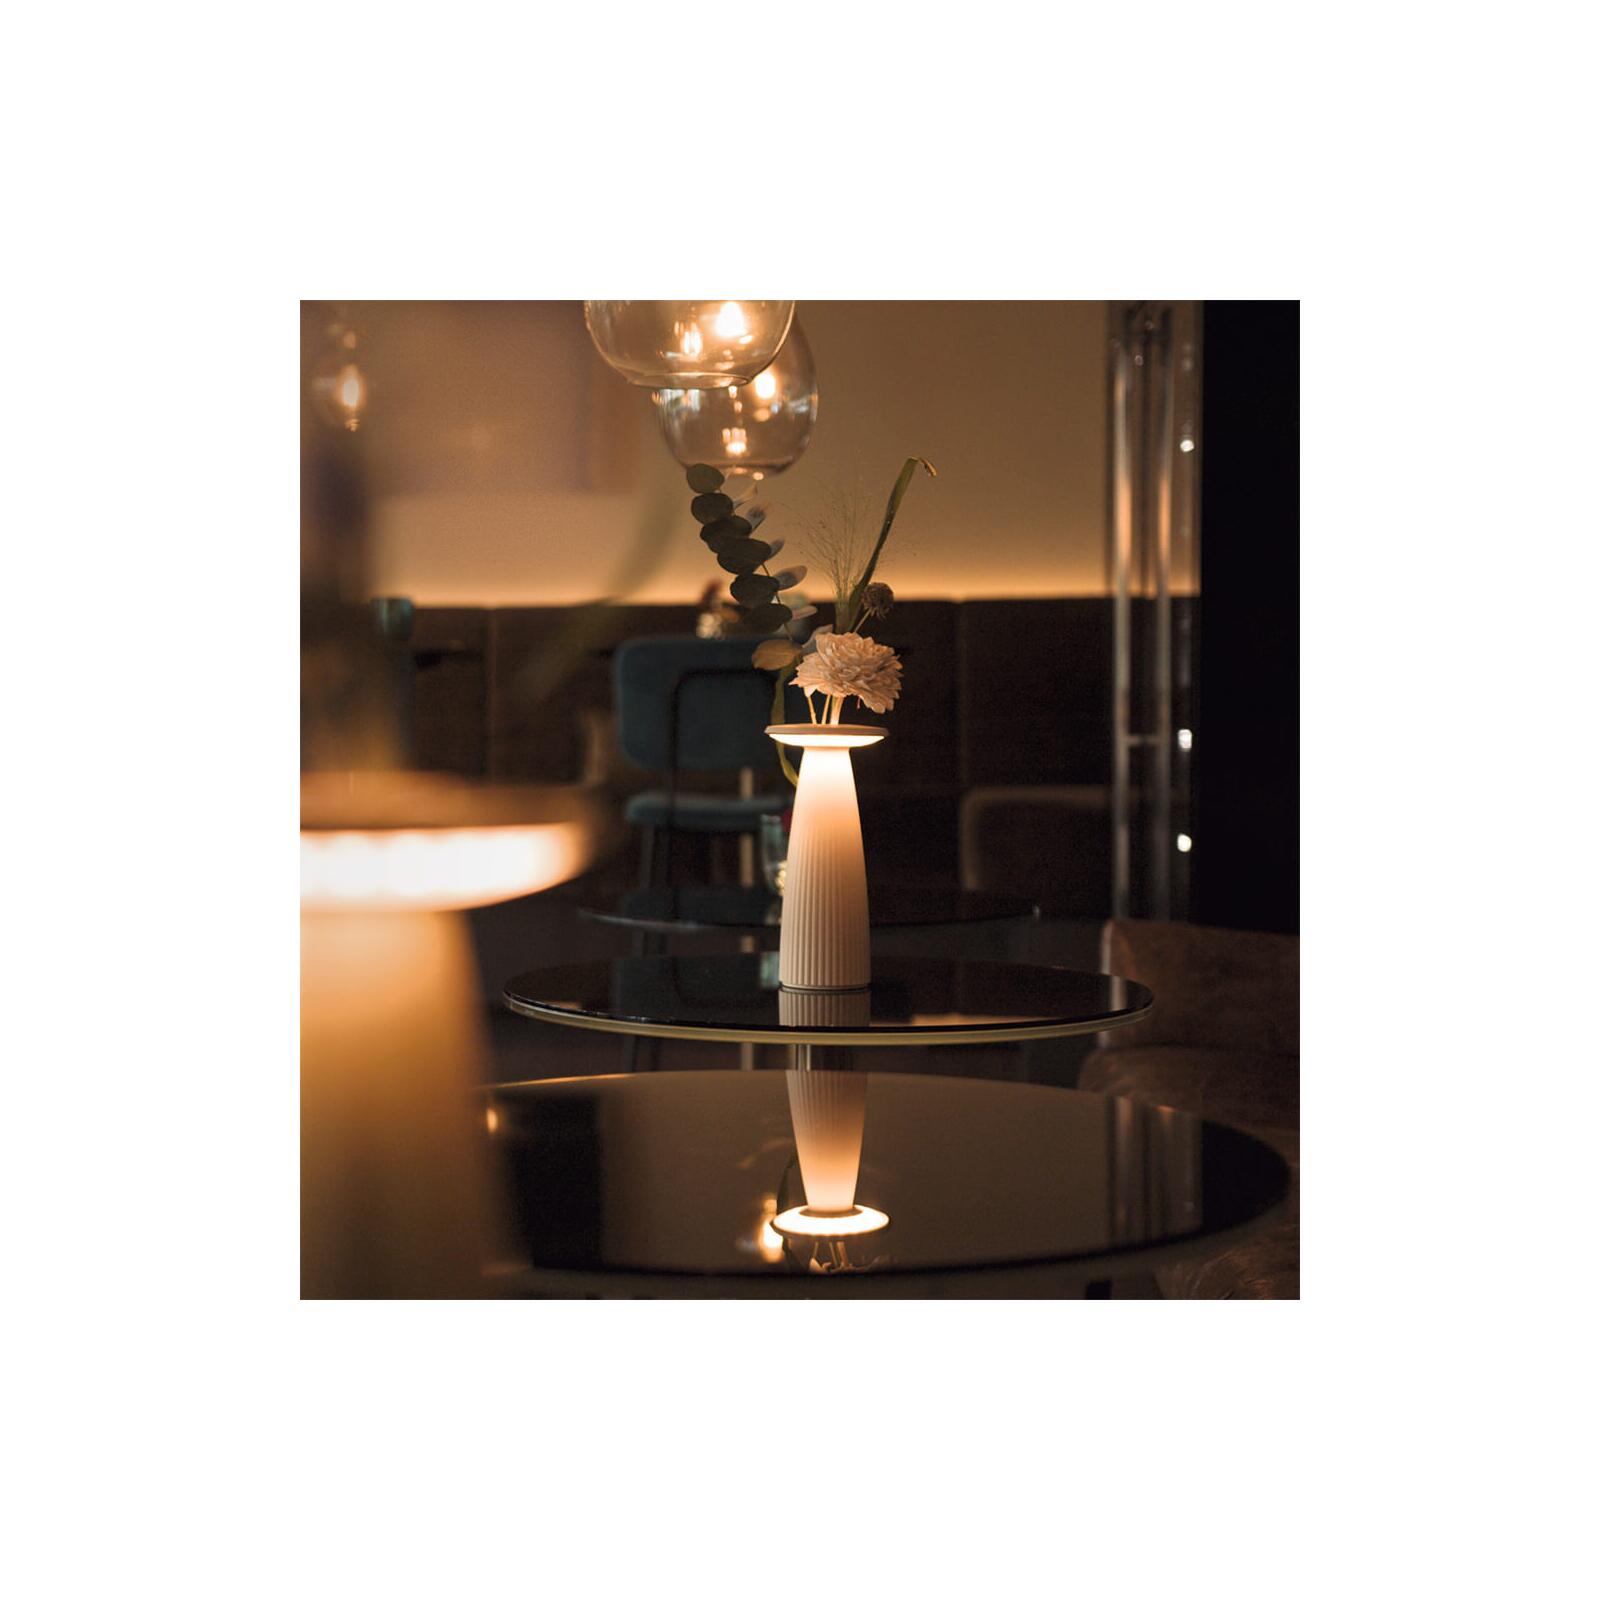 Sigor LED Akku-Tischleuchte Lampen - dimmbar IP54 & Blumenvase Onlineshop beleuchtet Nuflair Leuchten